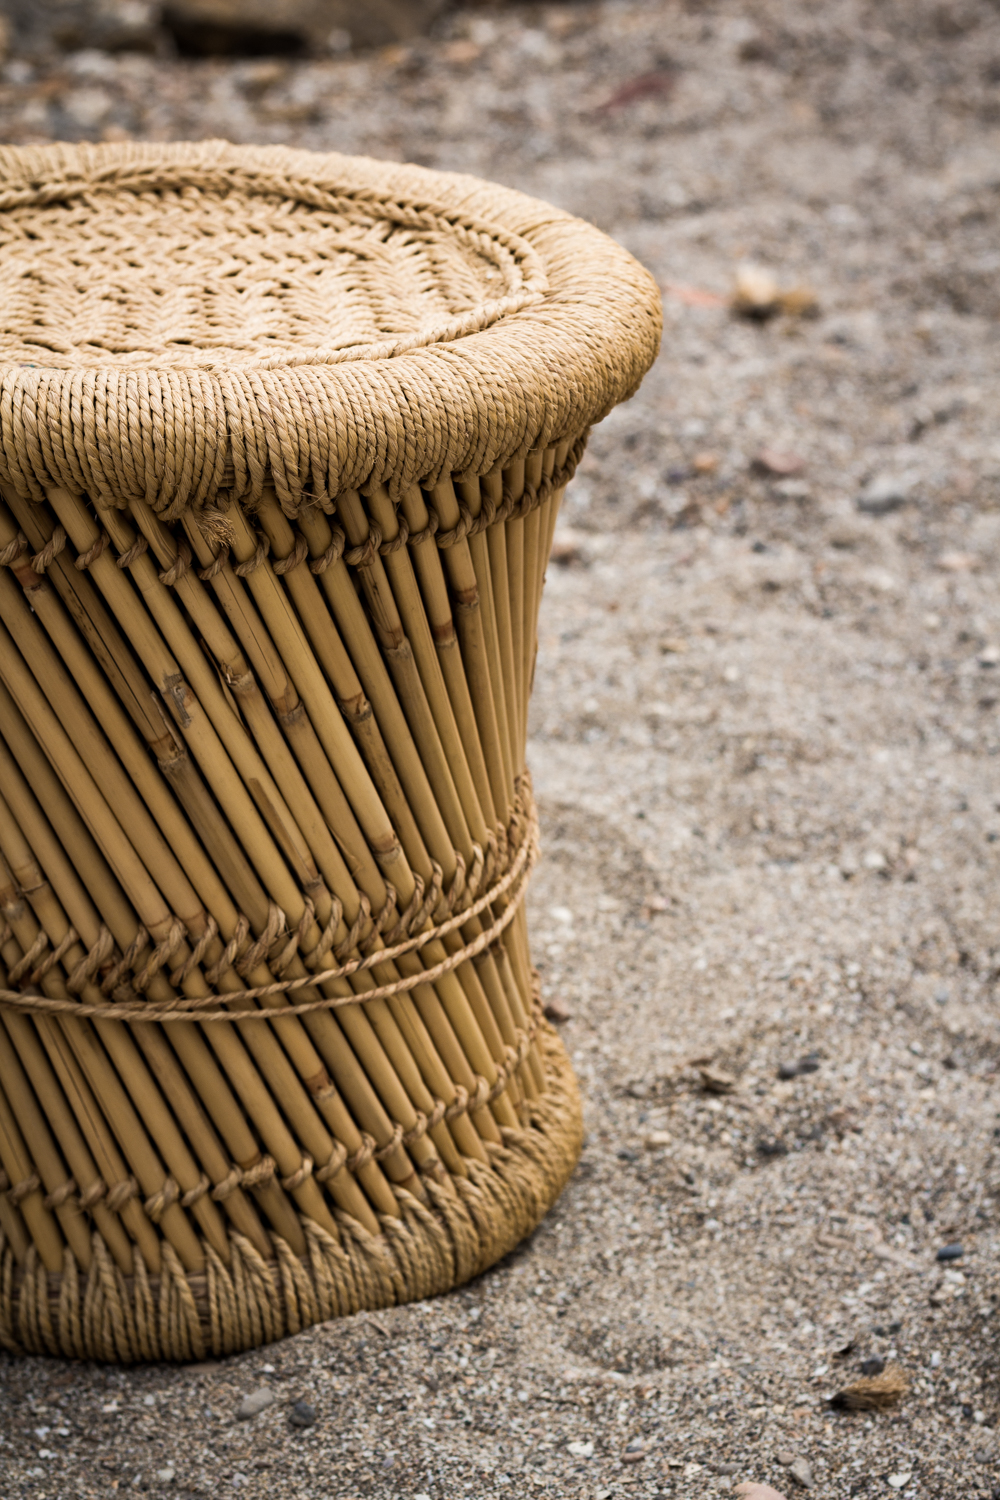 Bamboo cane stools.